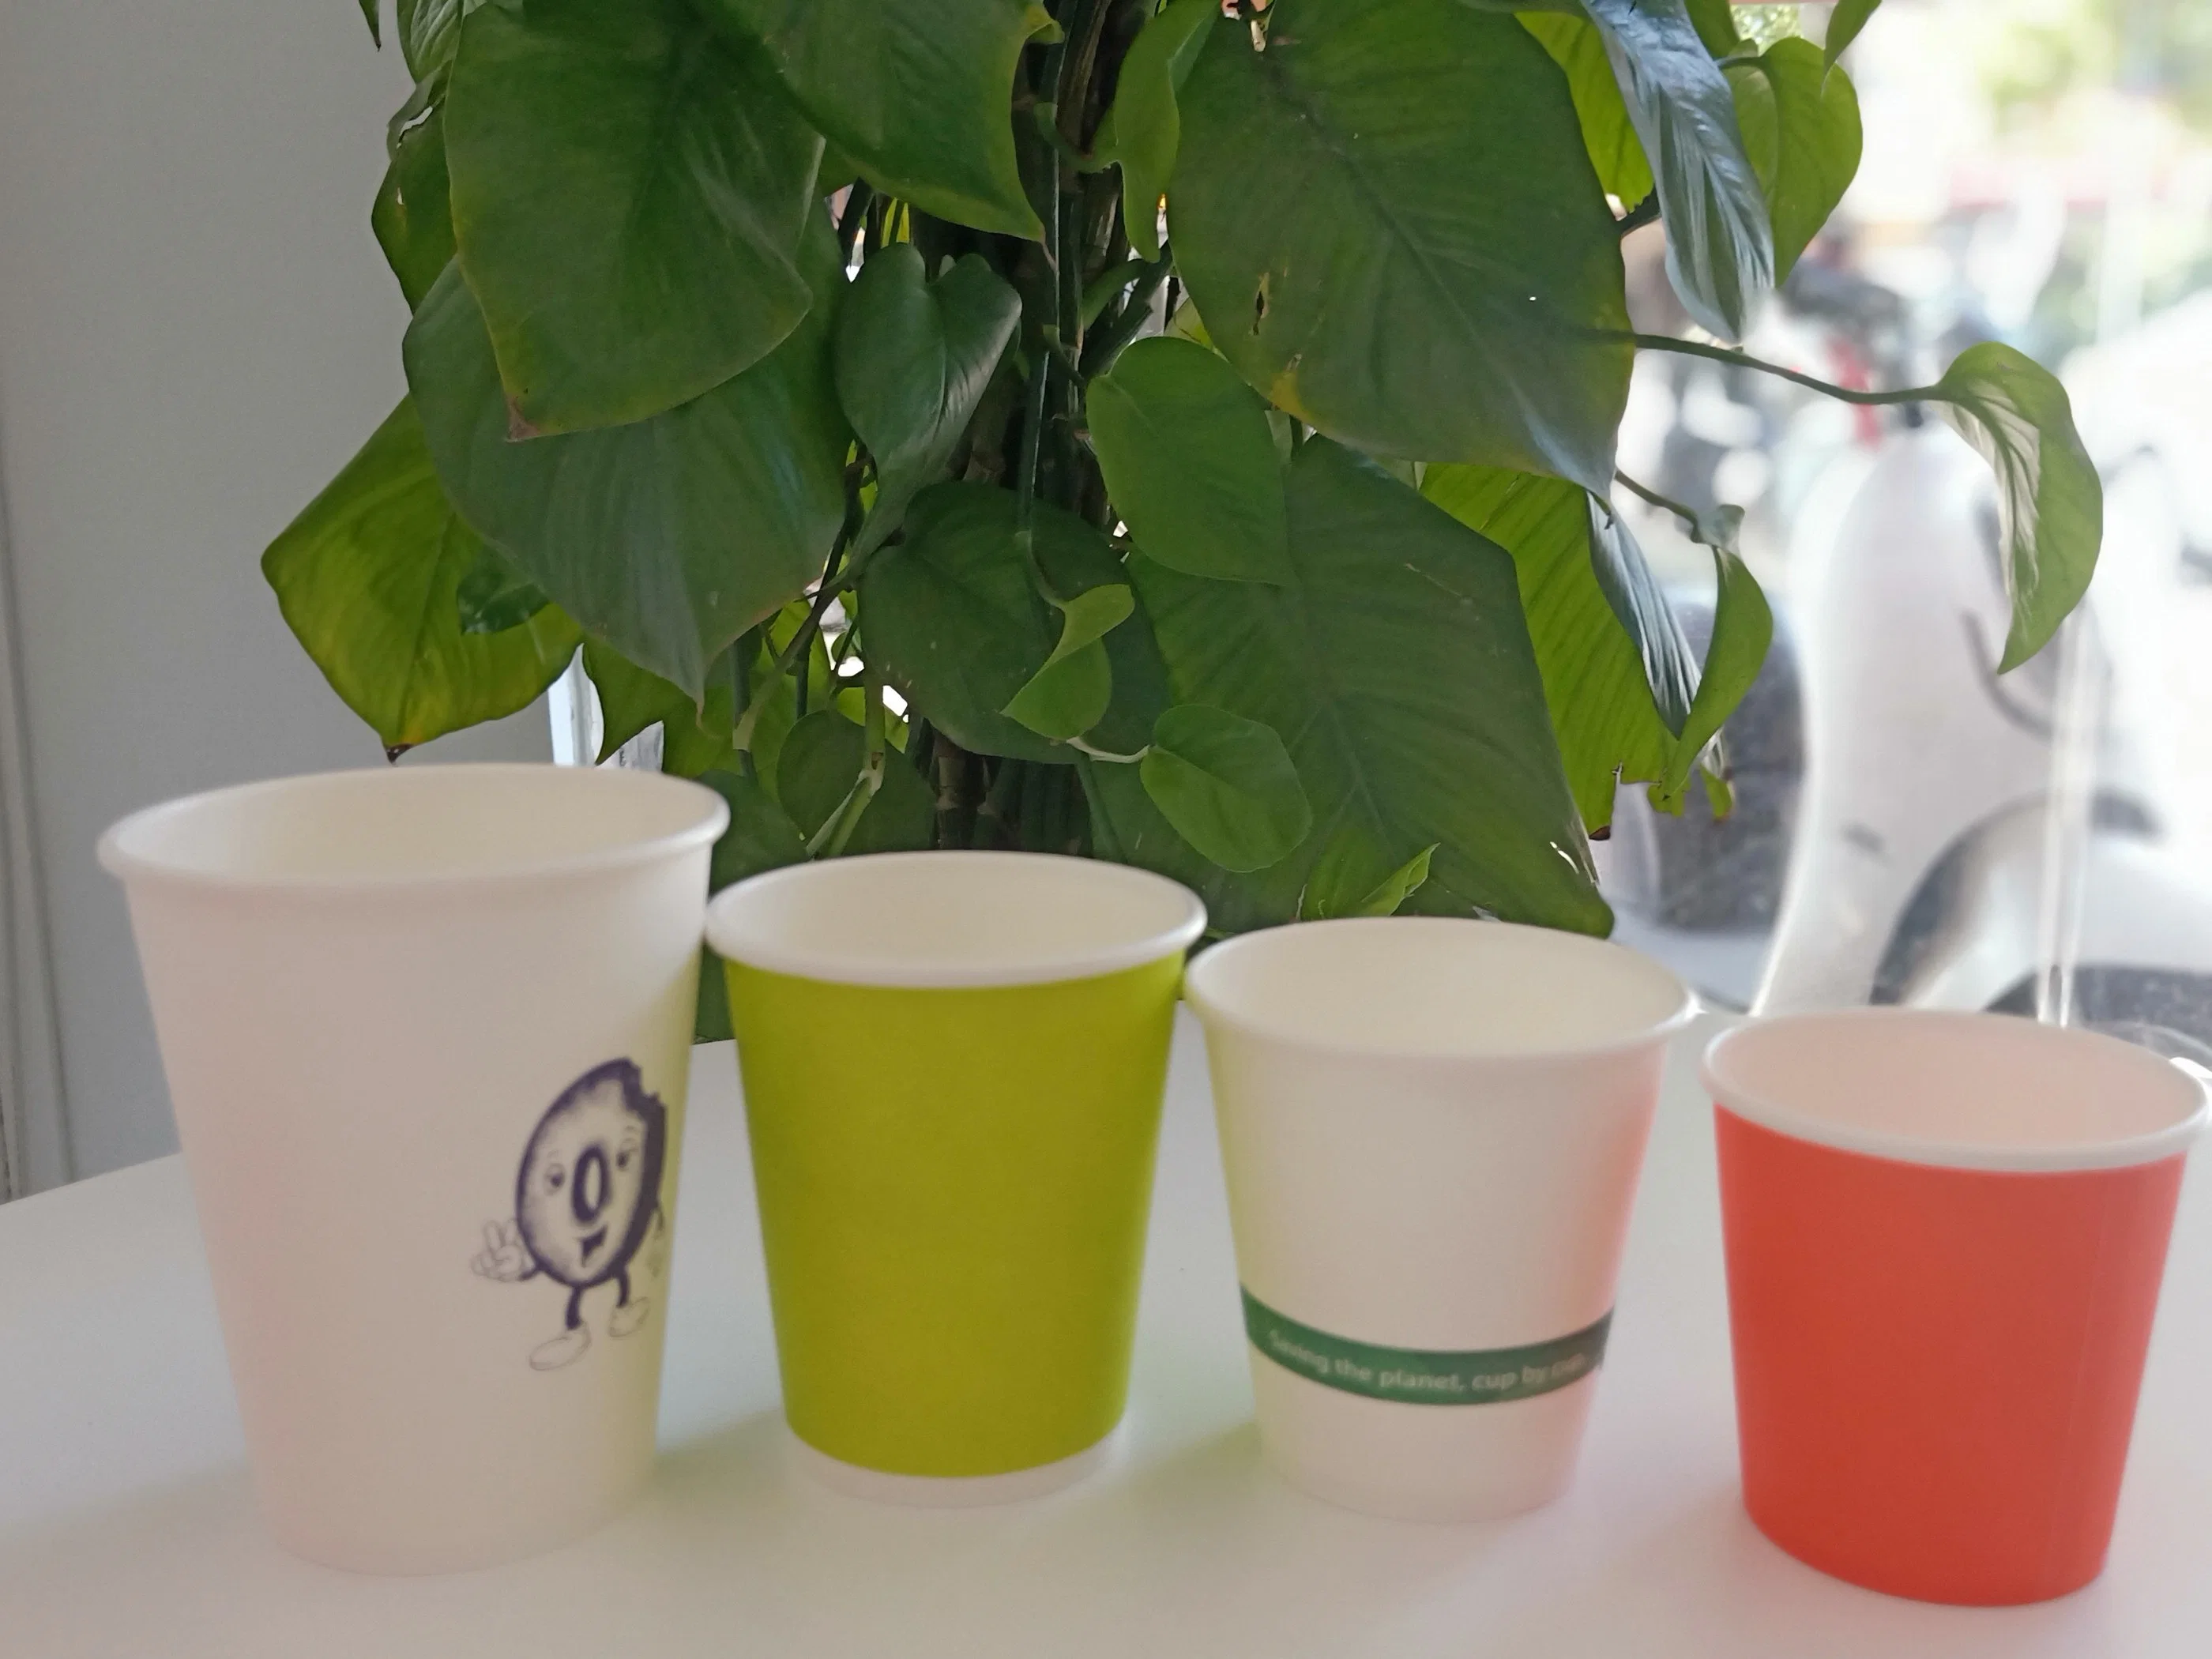 Factoty Supply Plastic Free 100% Paper Plastic Free без ПЭ Одноразовая чашка для кофе с фирменным логотипом и биоразлагаемым кофе